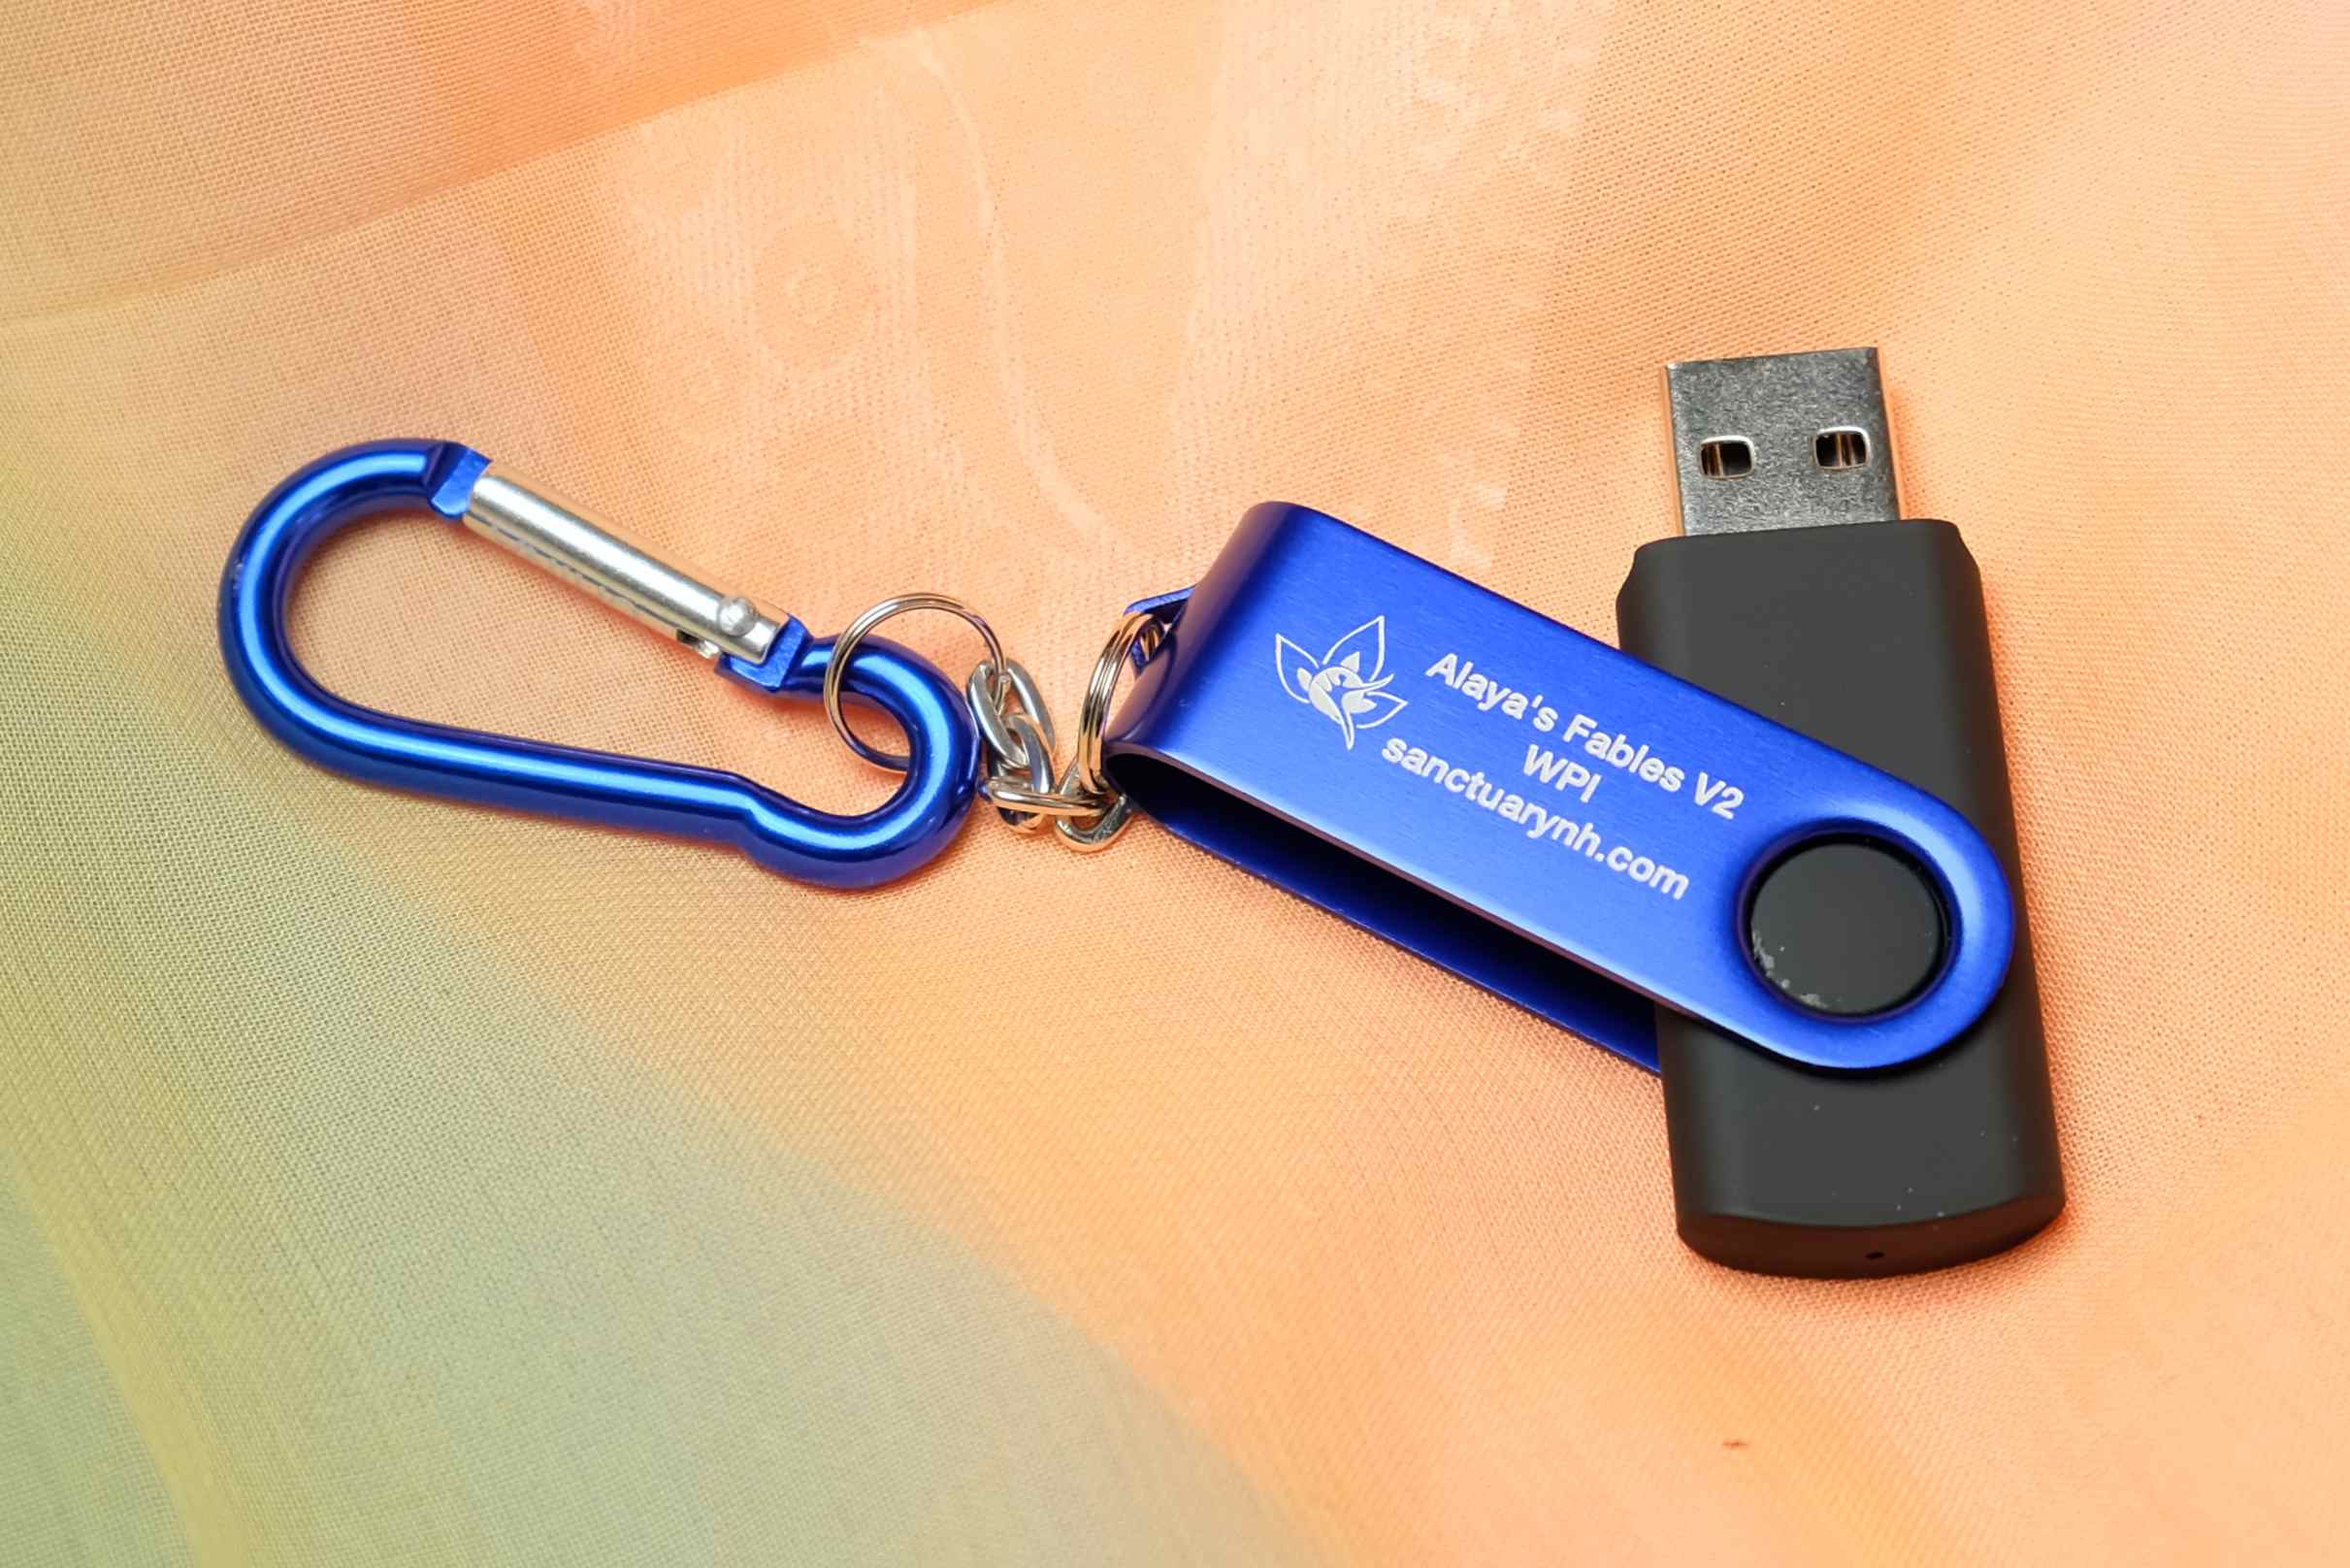 Alayas Fables V2 USB